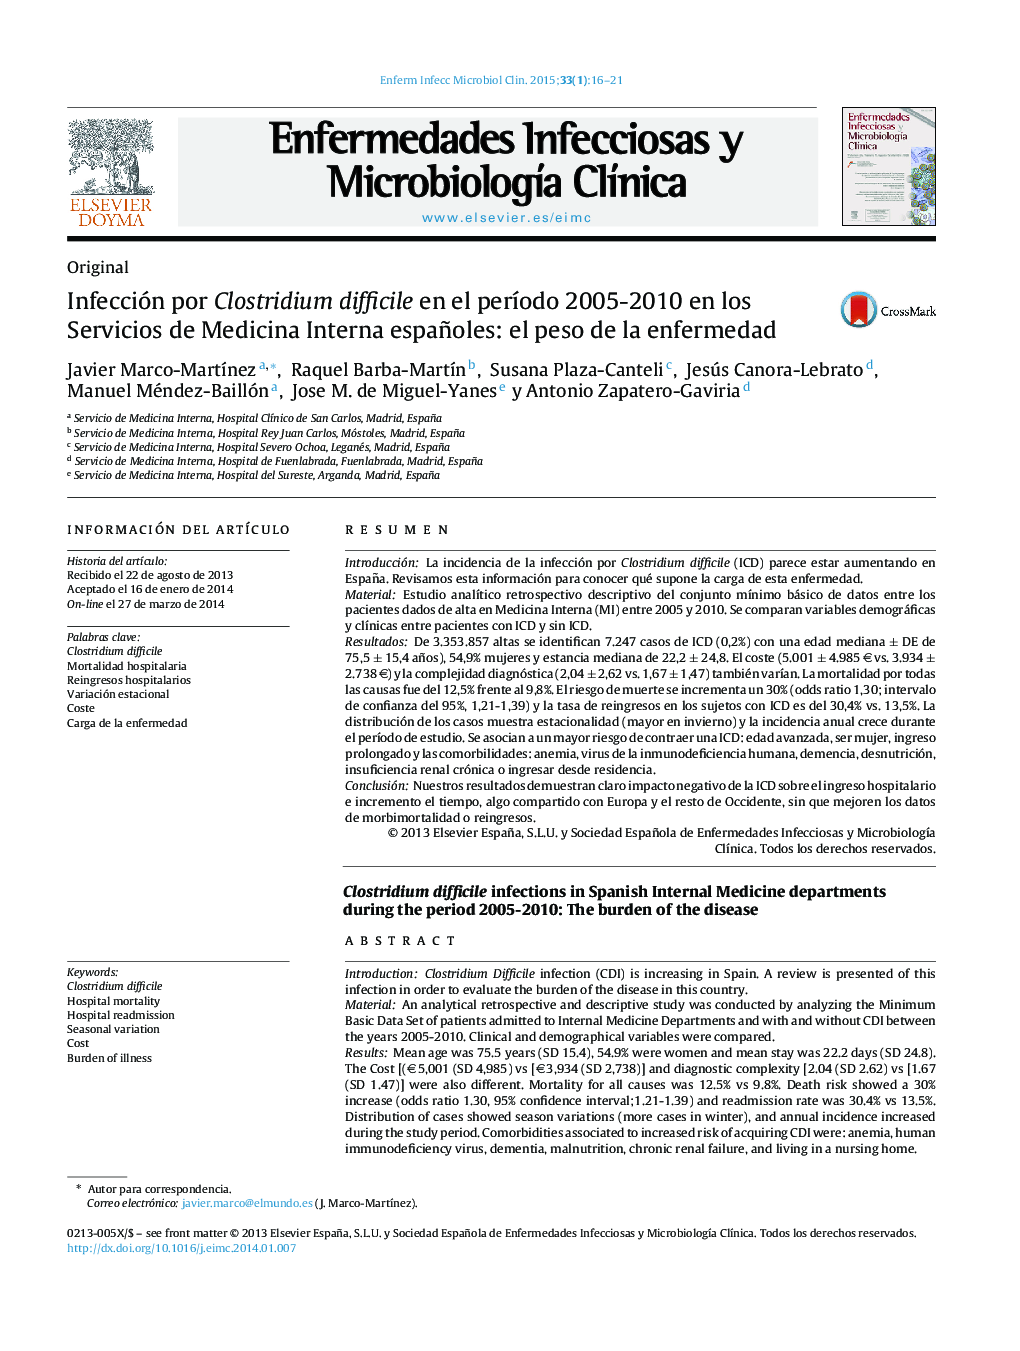 Infección por Clostridium difficile en el período 2005-2010 en los Servicios de Medicina Interna españoles: el peso de la enfermedad